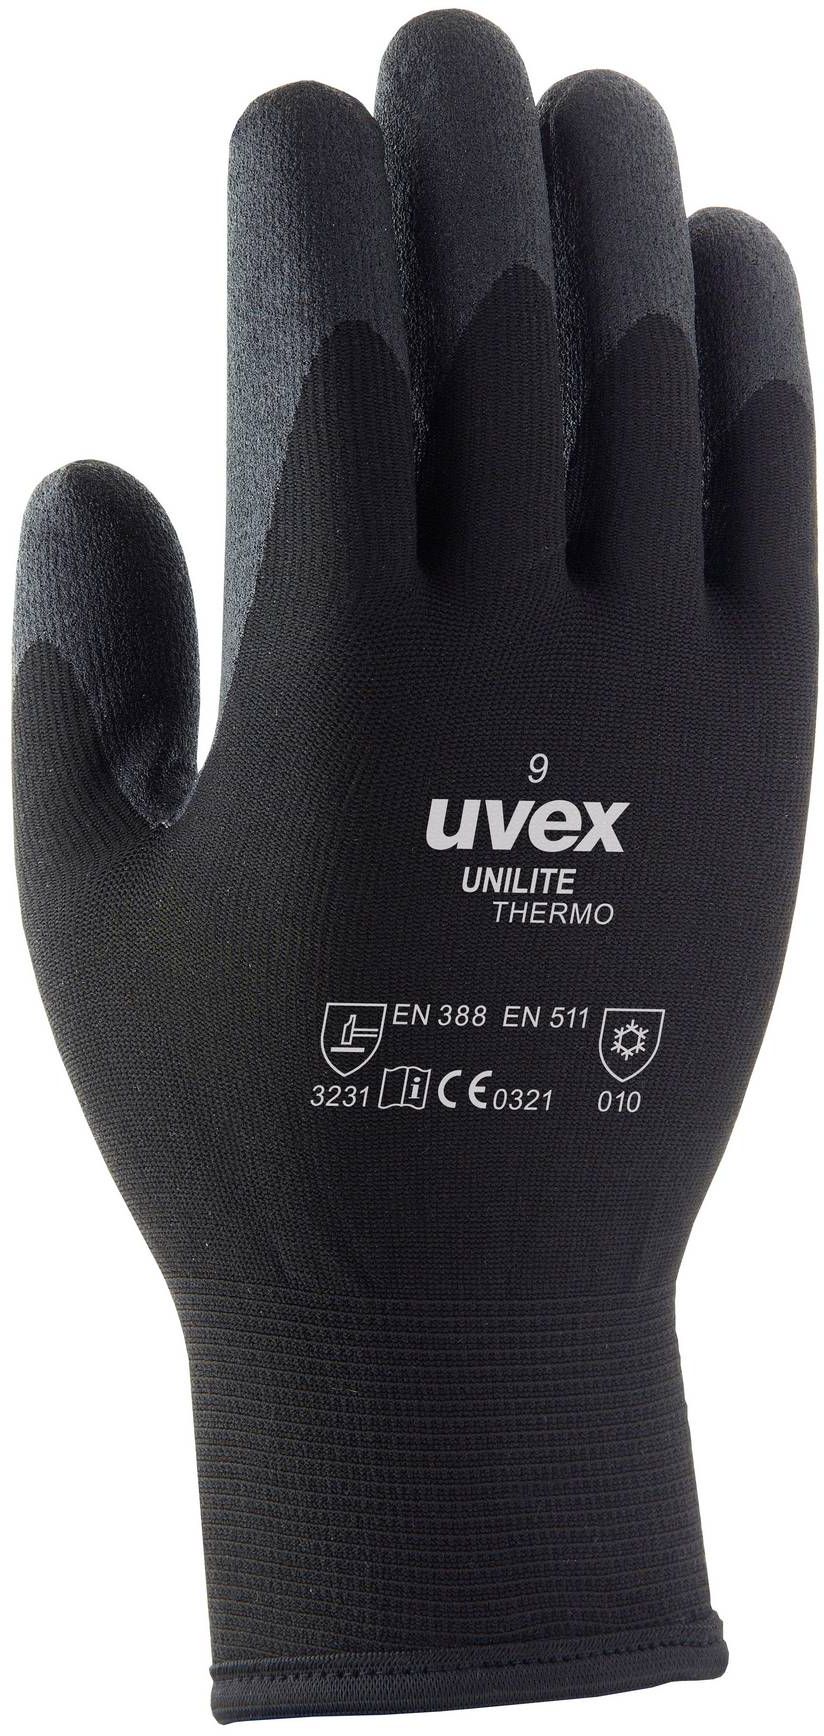 UVEX Winter Handschuh Unilite Thermo Gr. 9, schwarz, Art. 60593 - Arbeitsschutz